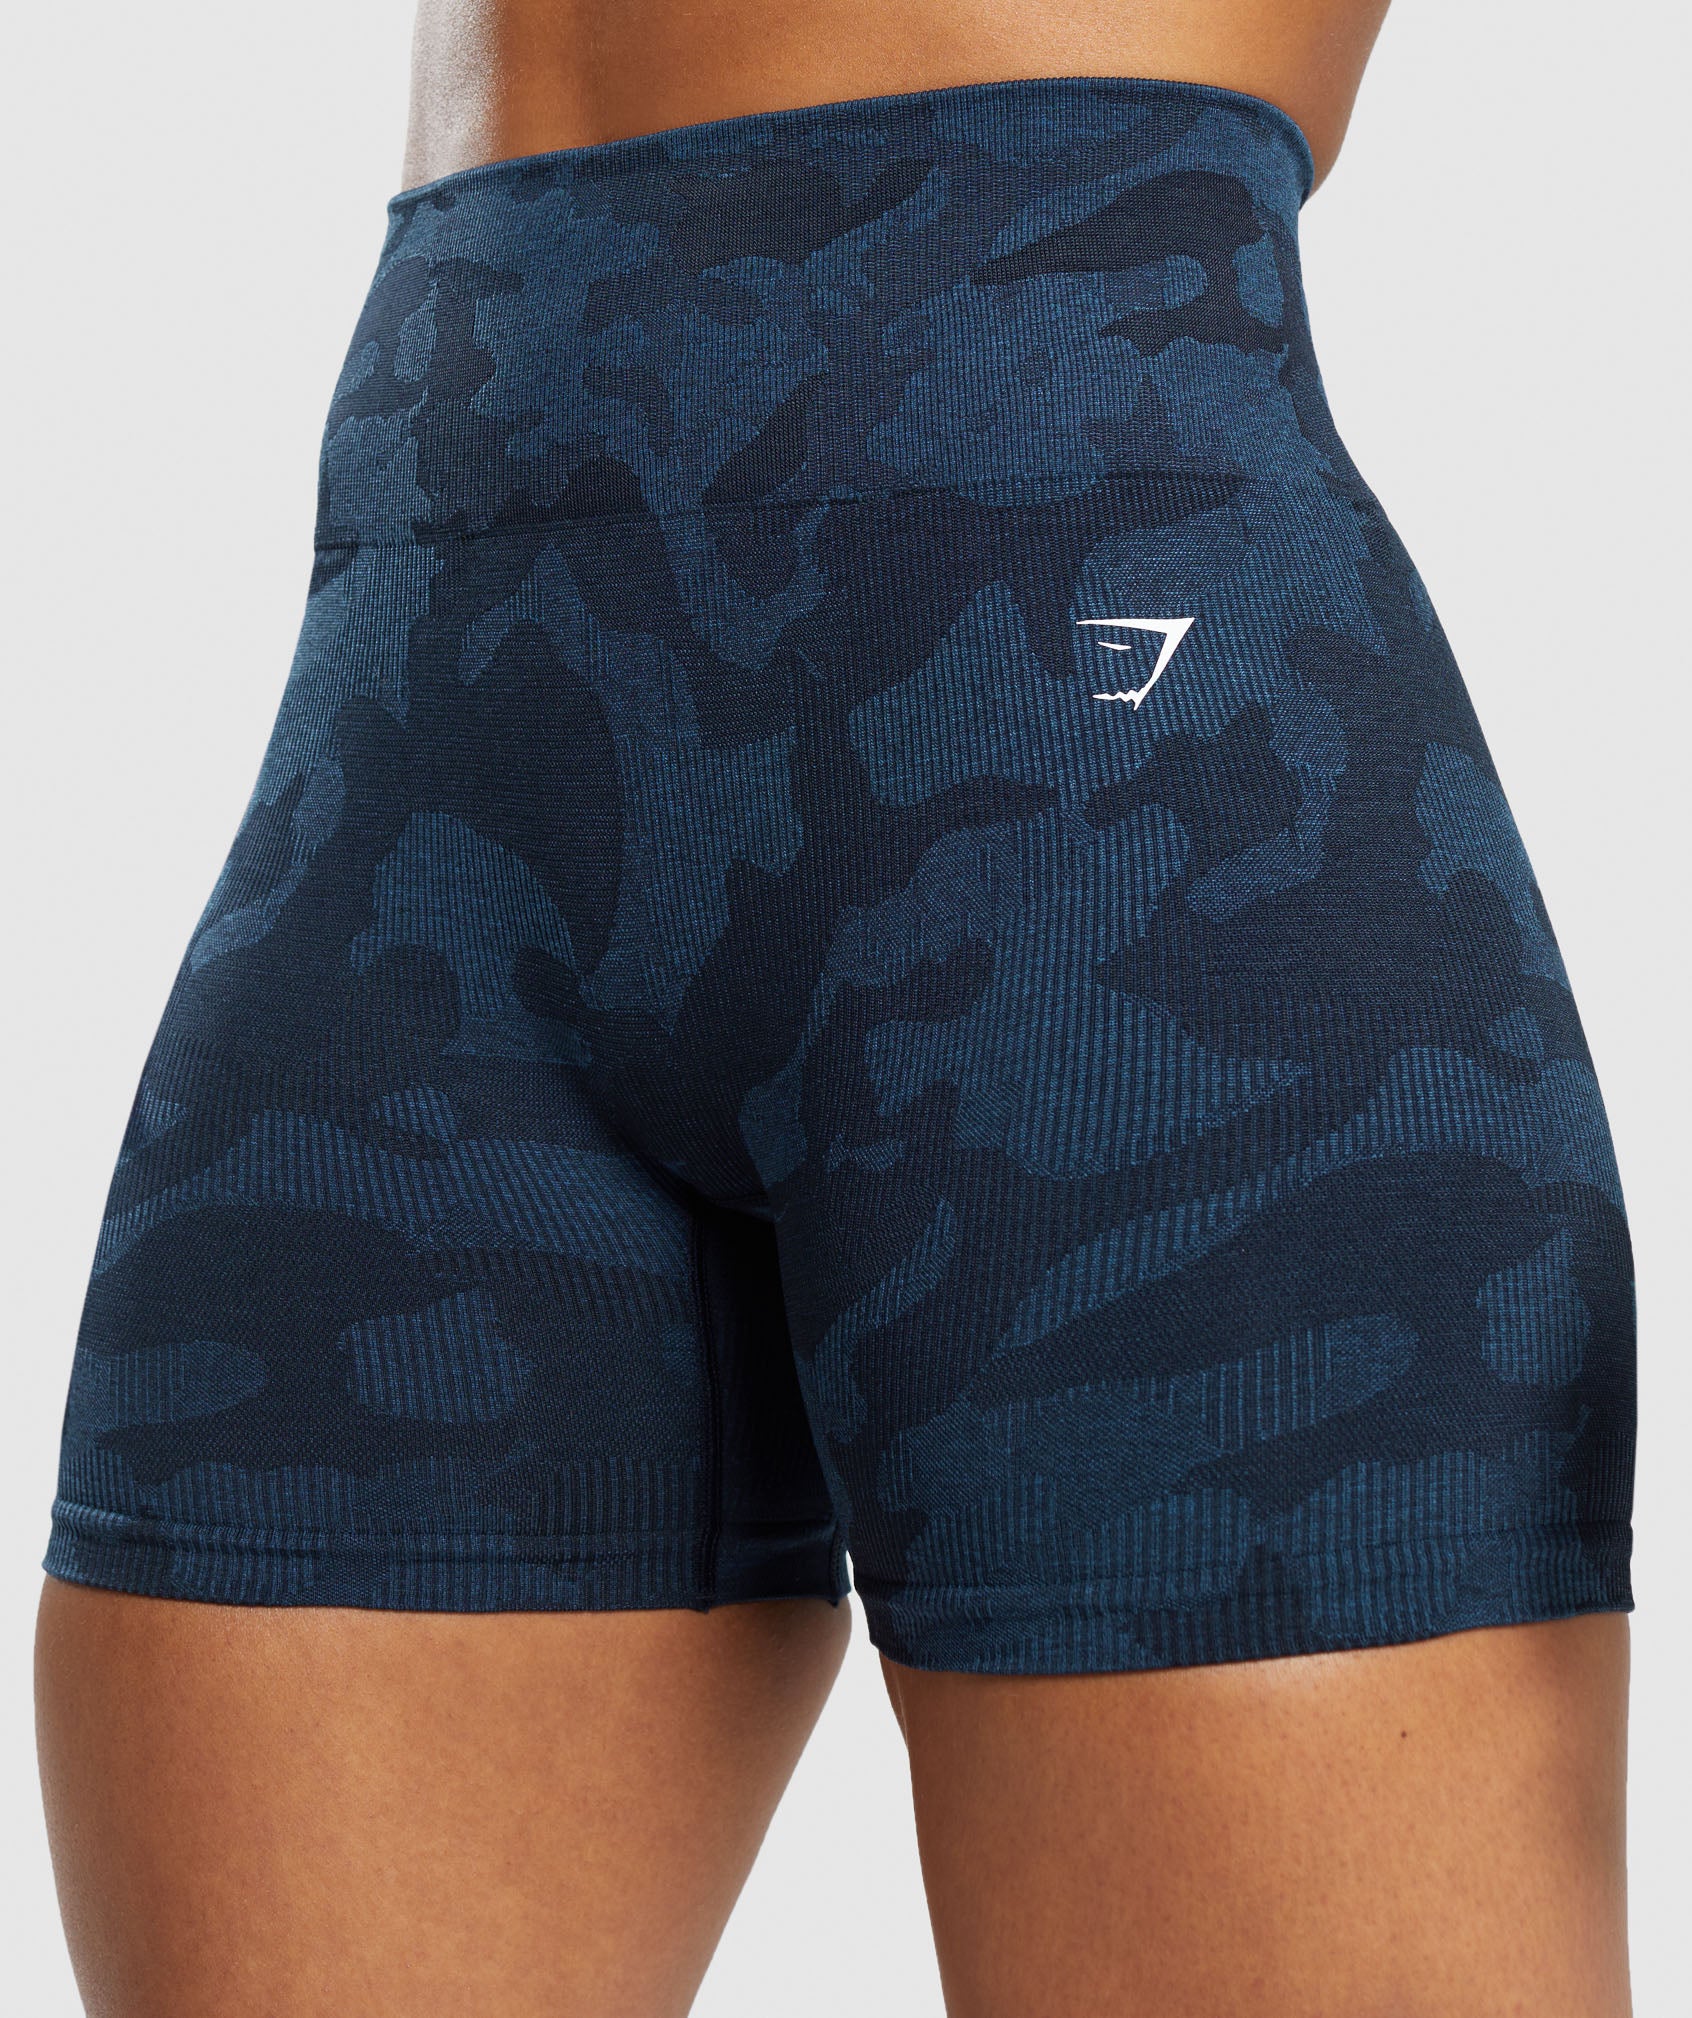 Gymshark camo shorts - Gem